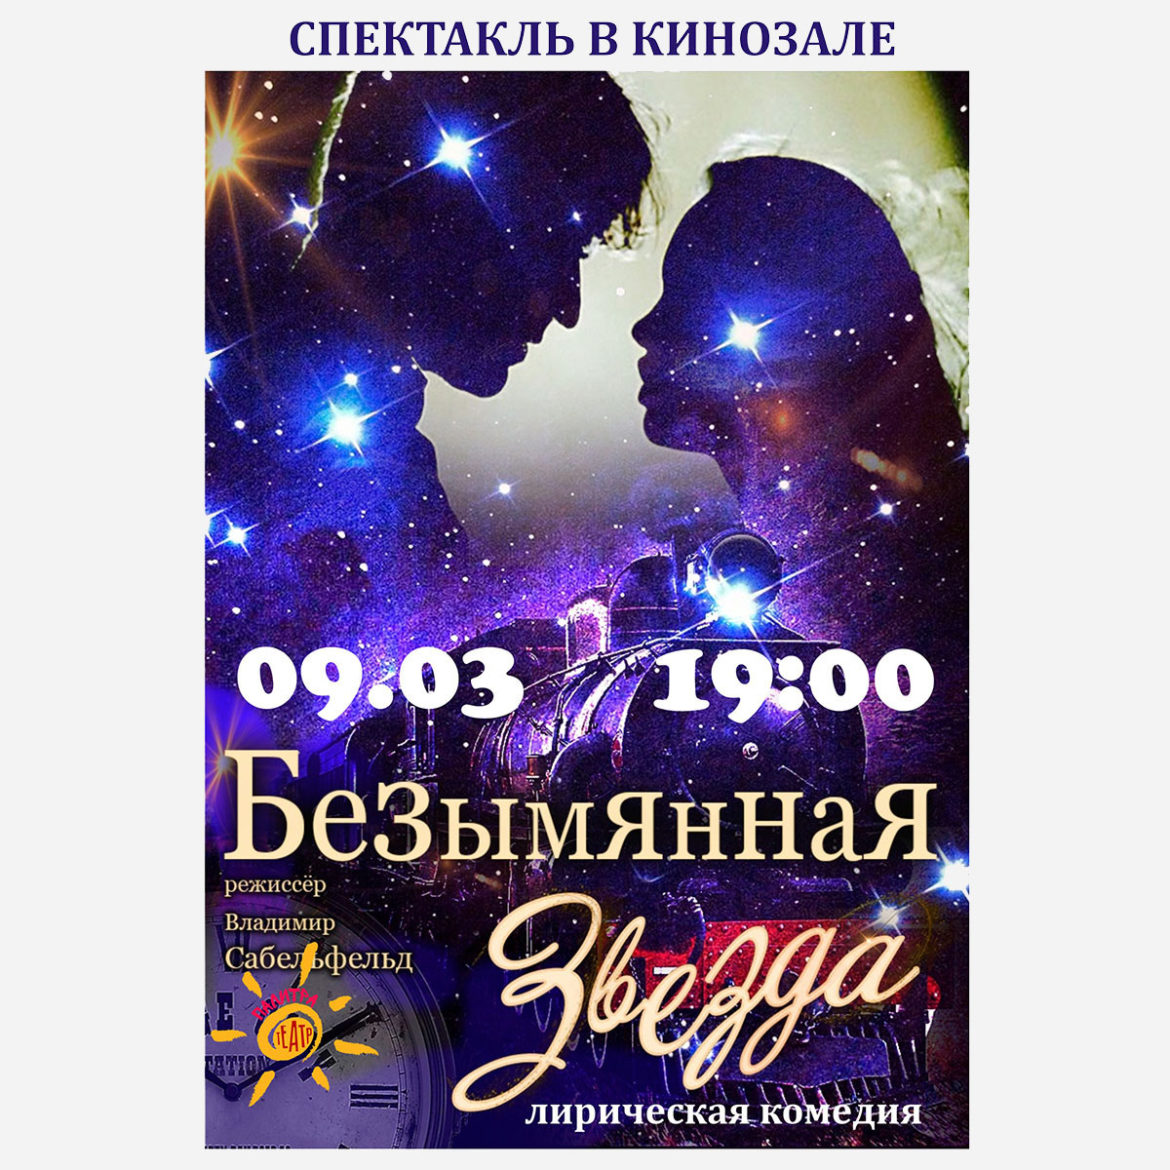 9 марта спектакль “Безымянная звезда”